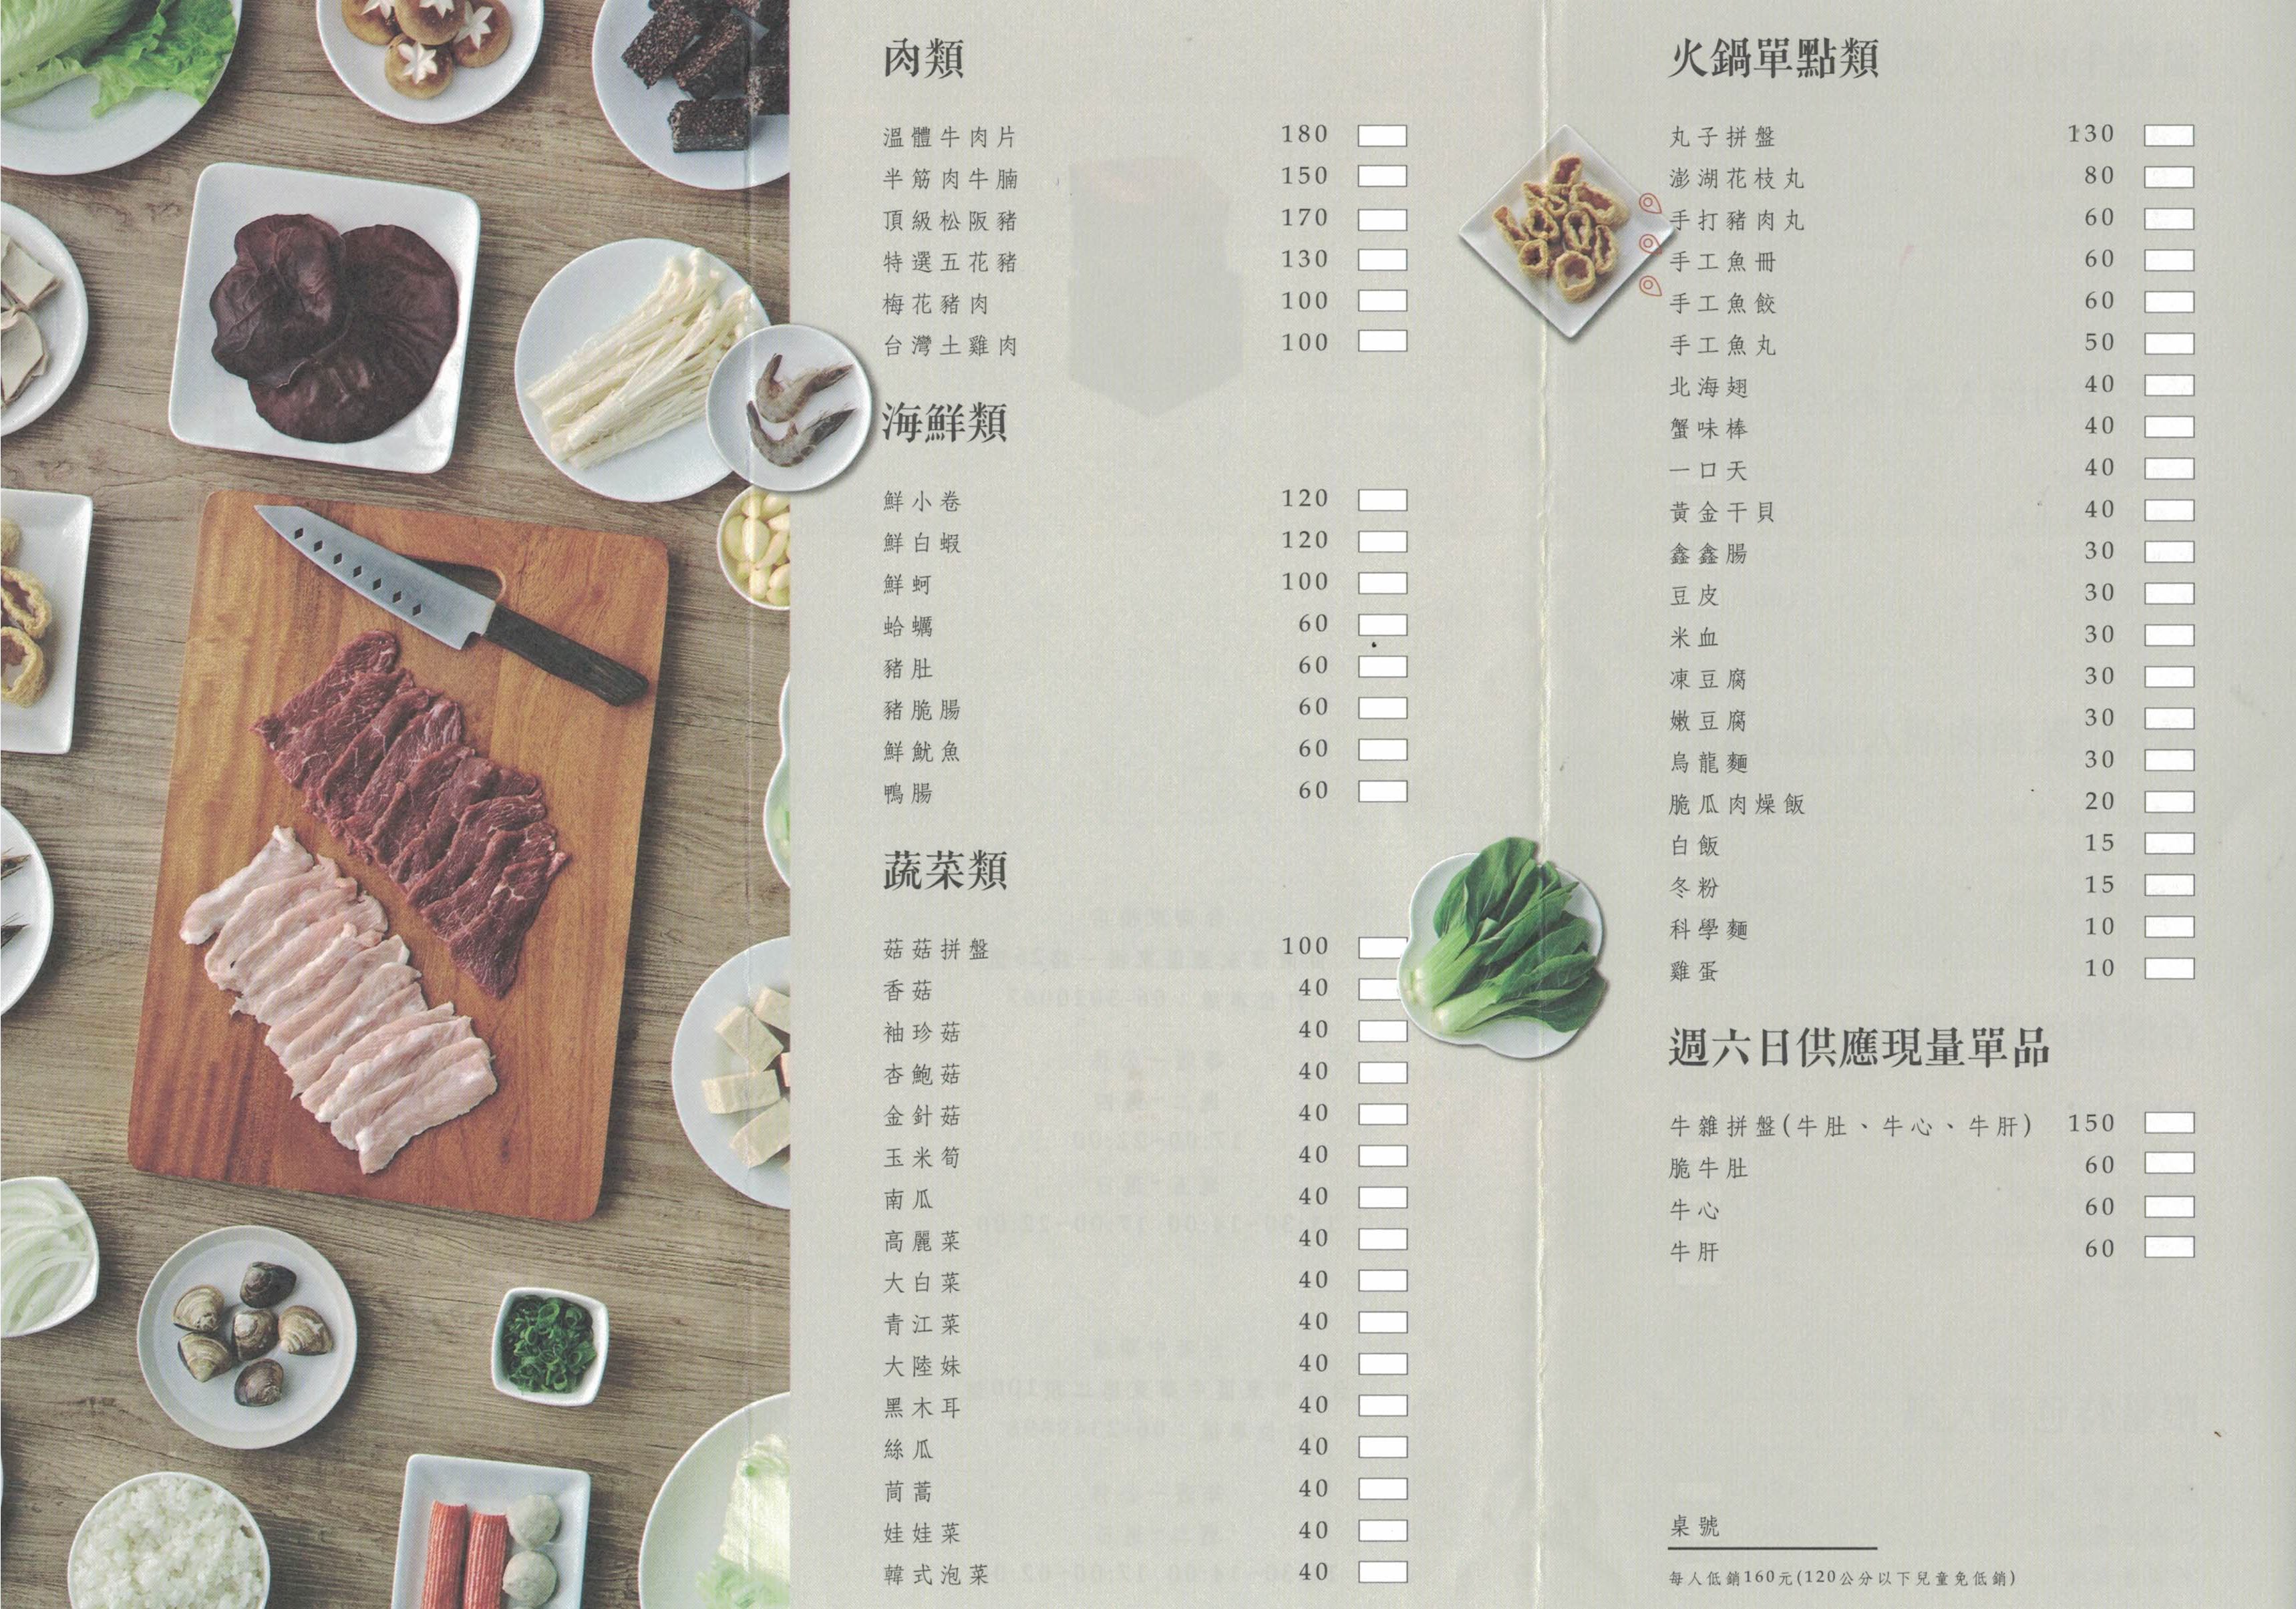 [台南]東區 鴻牛溫體牛肉鍋 中華店 食材新鮮實在 獨享美食個人鍋